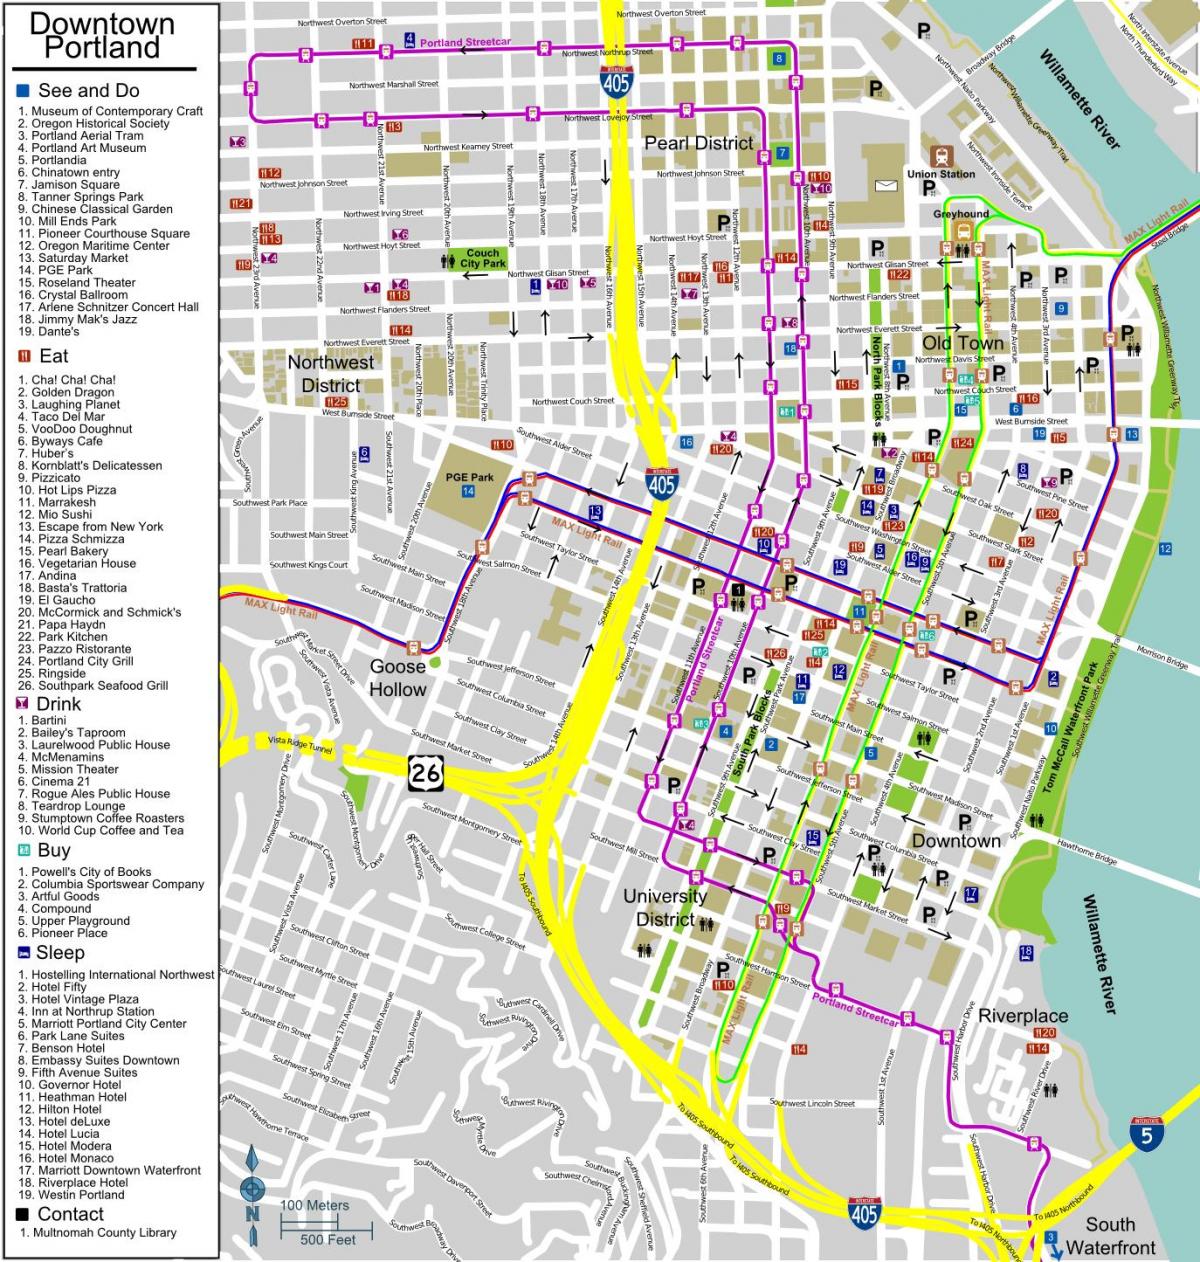 térkép belvárosi Portland